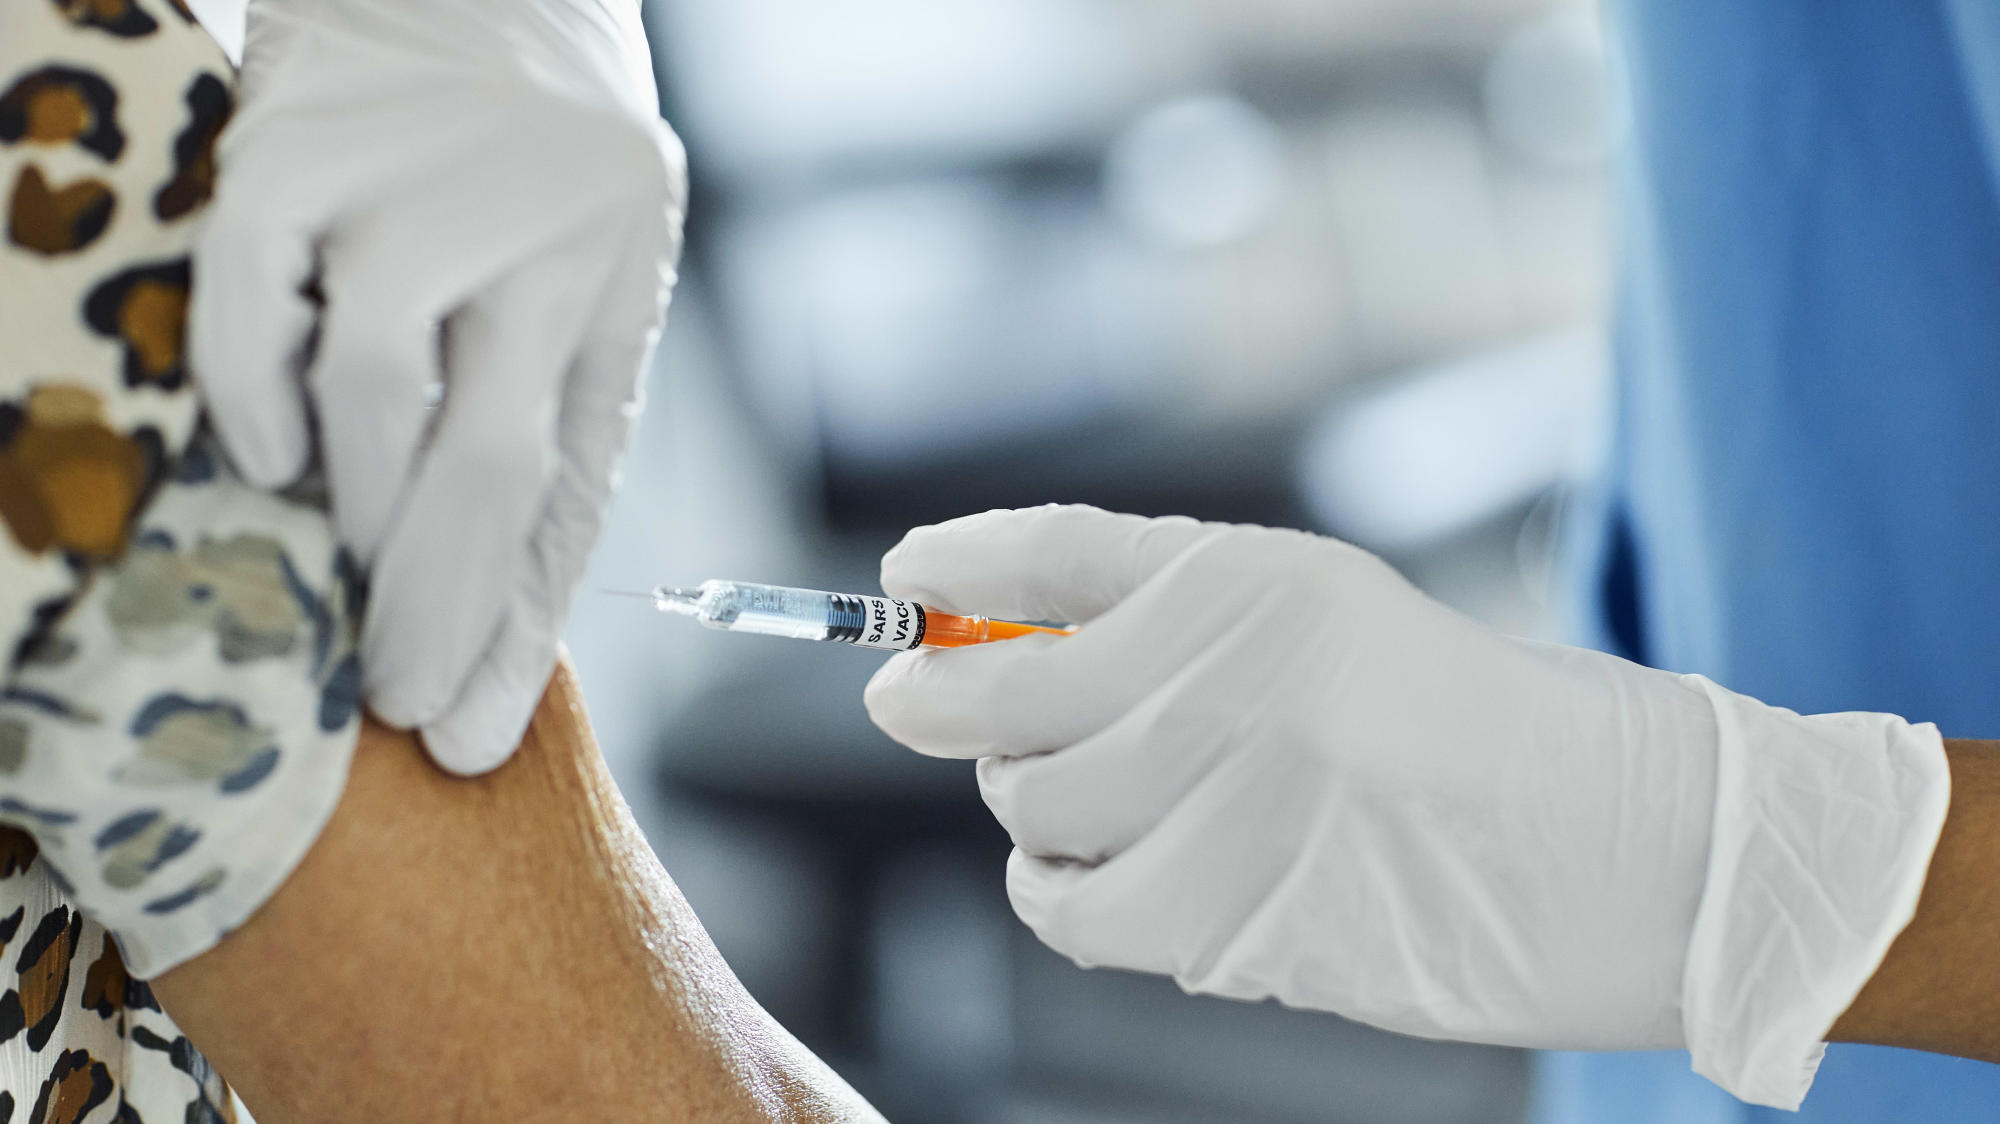 Из-за путаницы в объявлении только 2300 жителей Паттайи сделали вакцину Pfizer от Covid